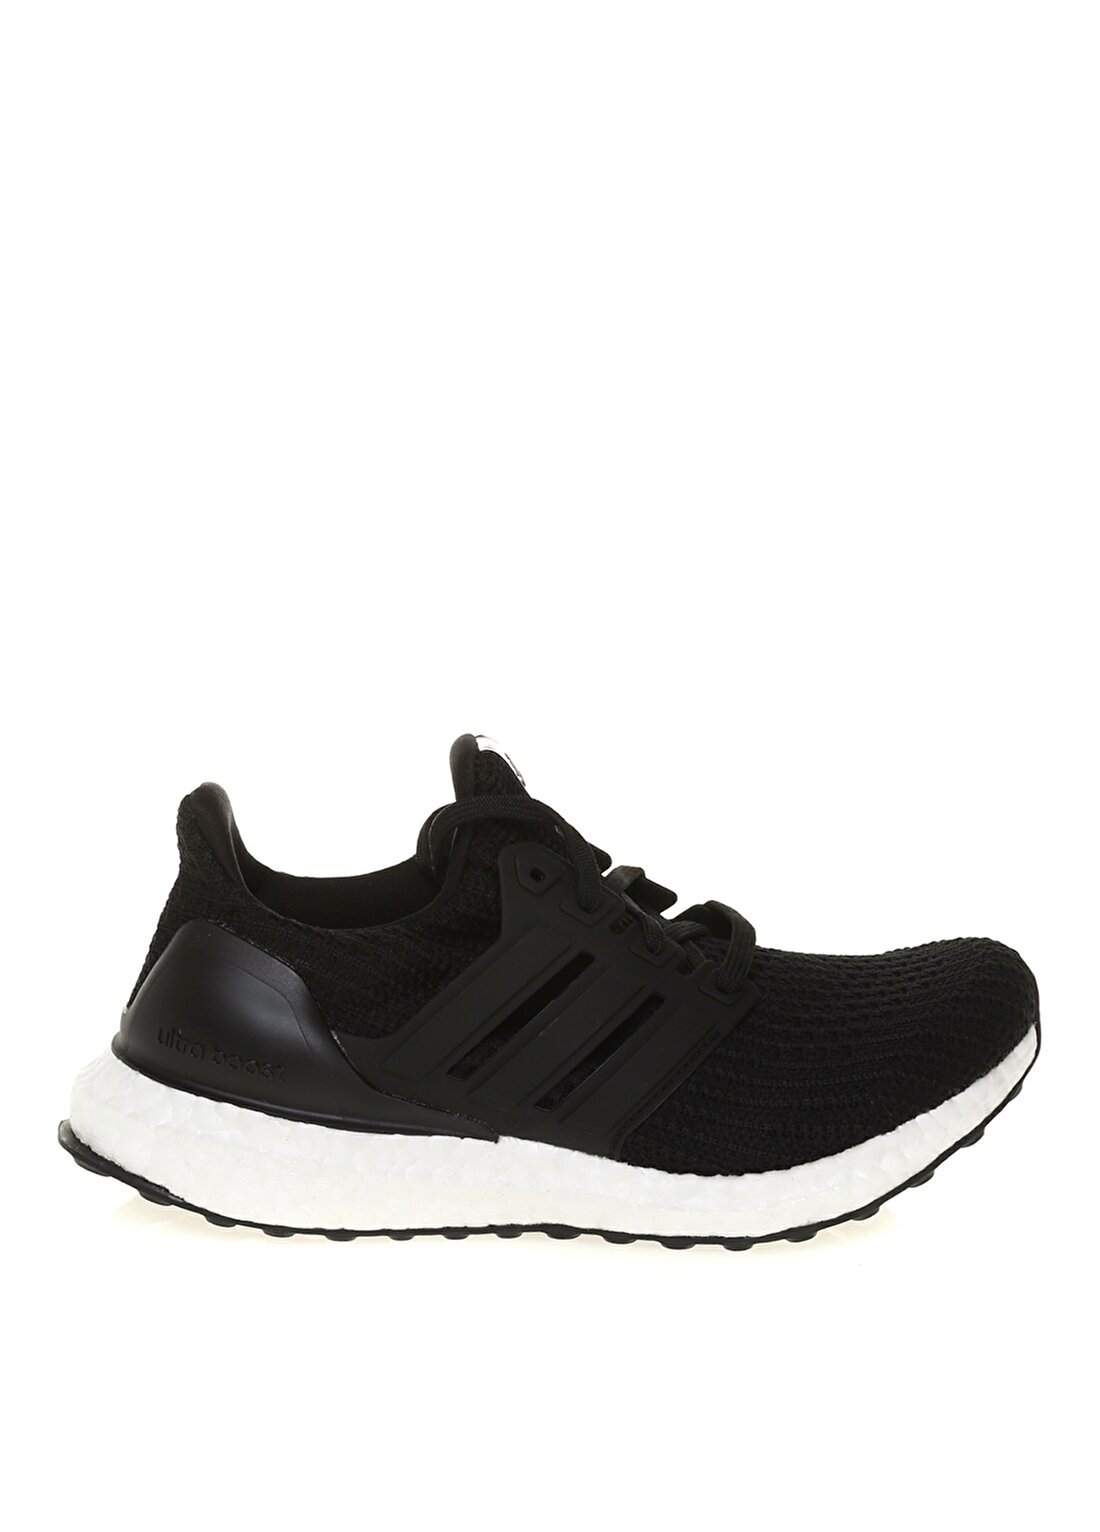 Adidas FY9123 Ultraboost 4.0 Dna W Siyah-Beyaz Kadın Koşu Ayakkabısı